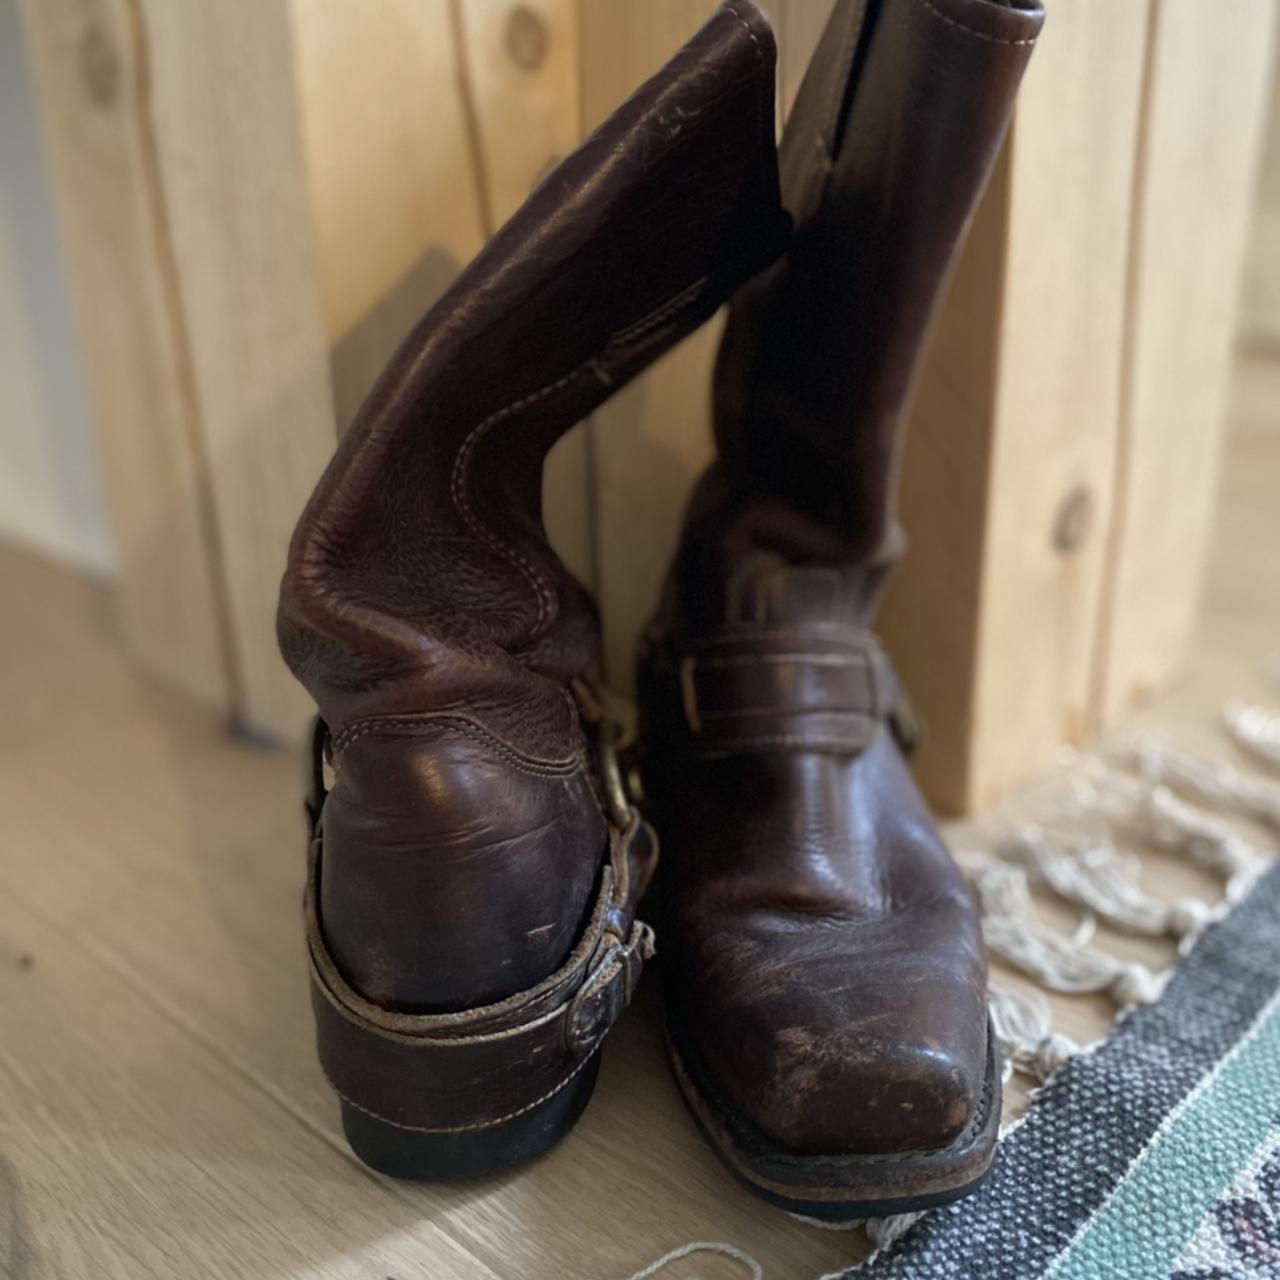 Preloved Rustic Frye Harness boots in Women’s size ... - Depop